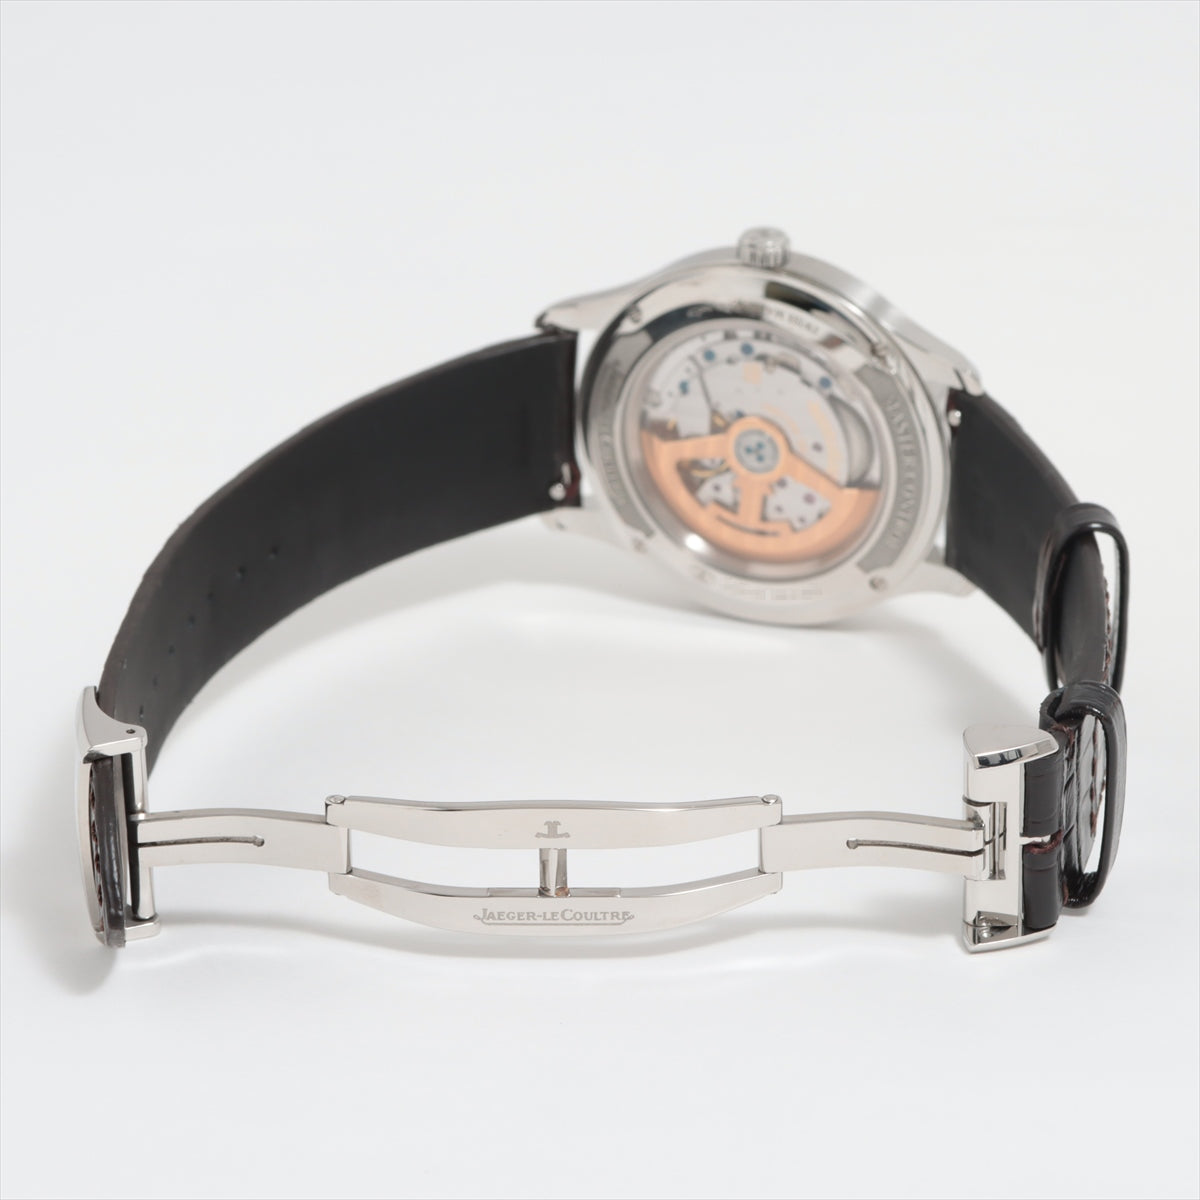 ジャガールクルト マスターコントロール SS×社外革   メンズ 腕時計